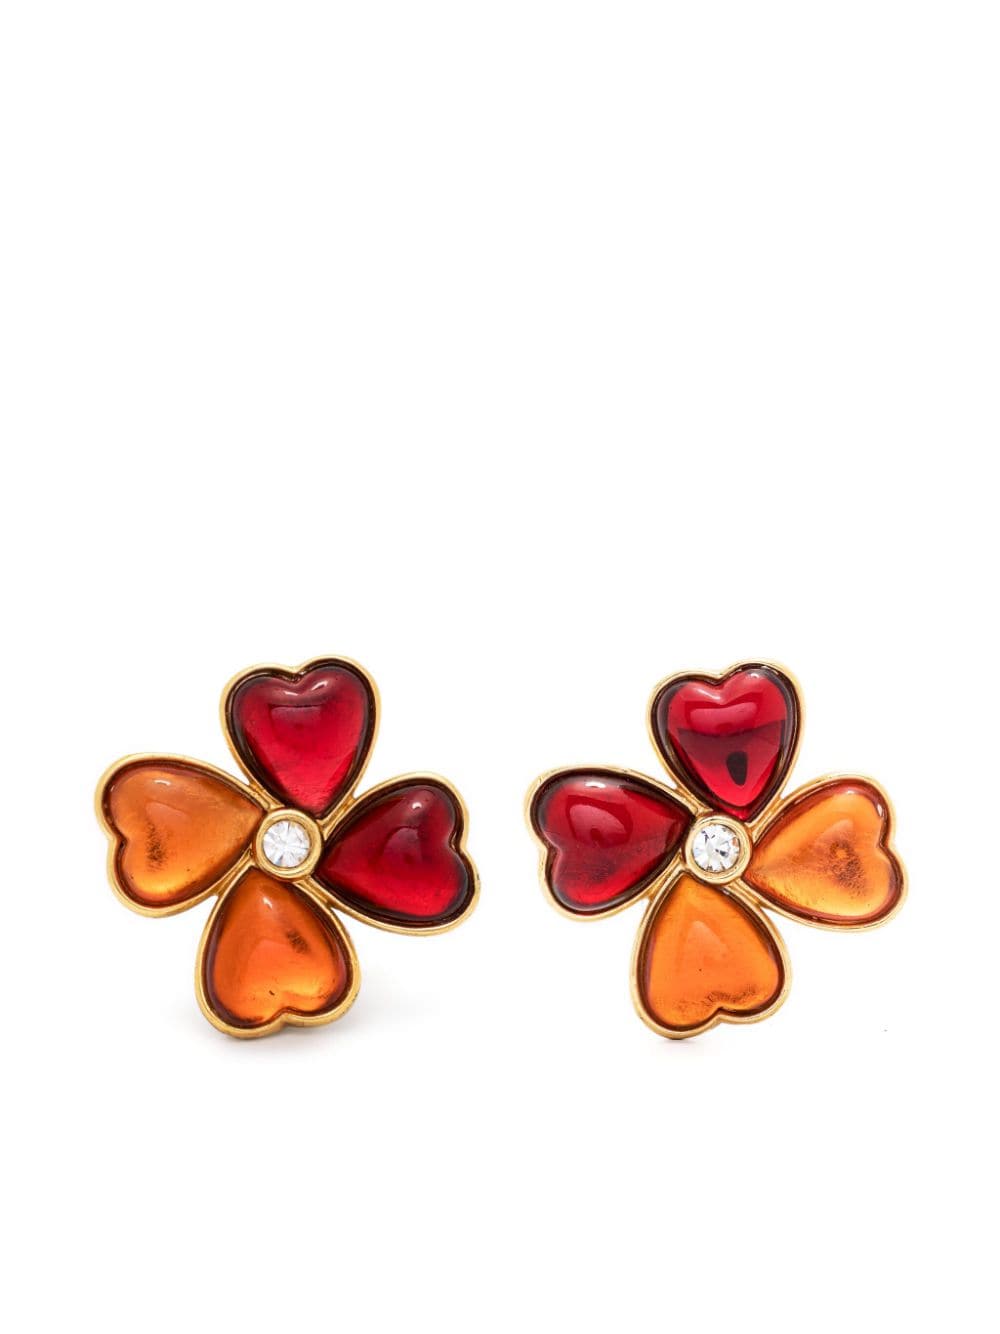 1980s clover clip-on earrings